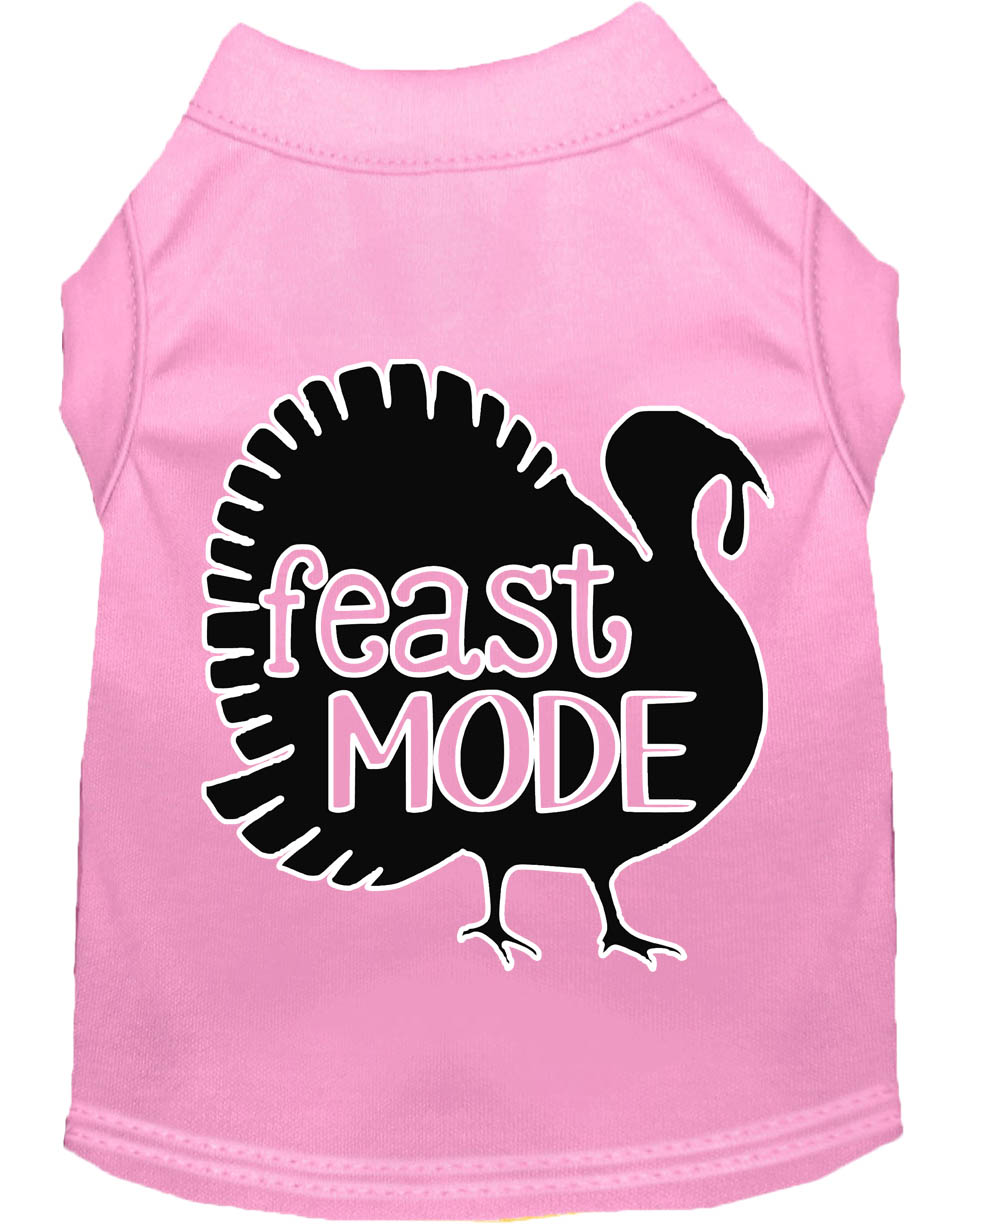 Feast Mode Screen Print Dog Shirt Light Pink Sm